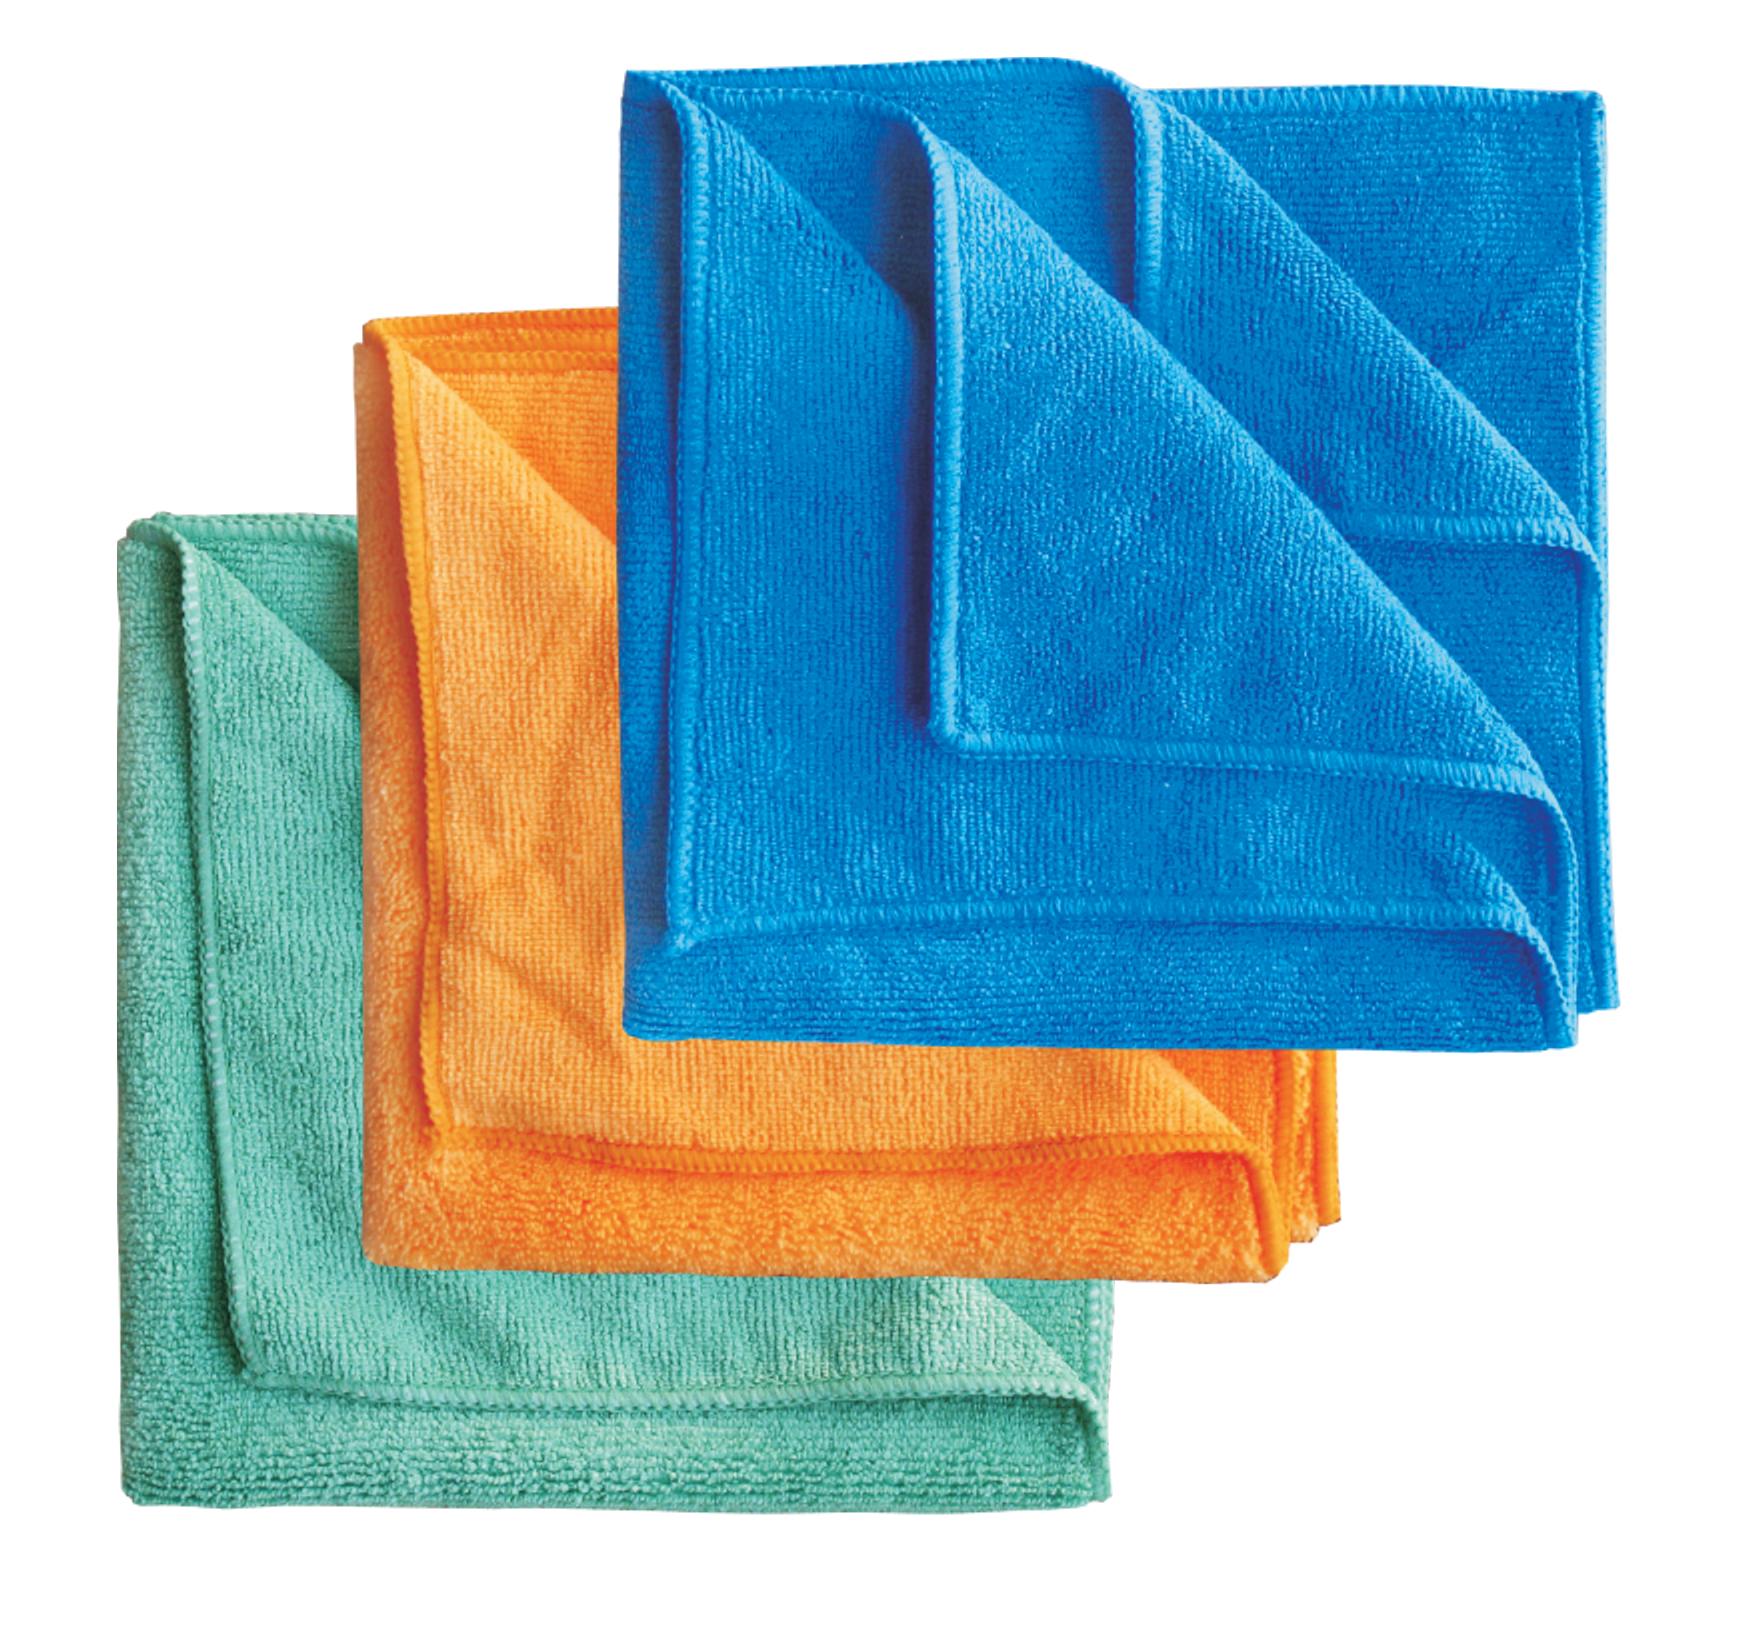 Mikrofasertuch blau 40 cm x 40 cm 30% Polyamid 70% Polyester 380 g/m² | reinigen Tuch Putztuch Poliertuch 40x40cm